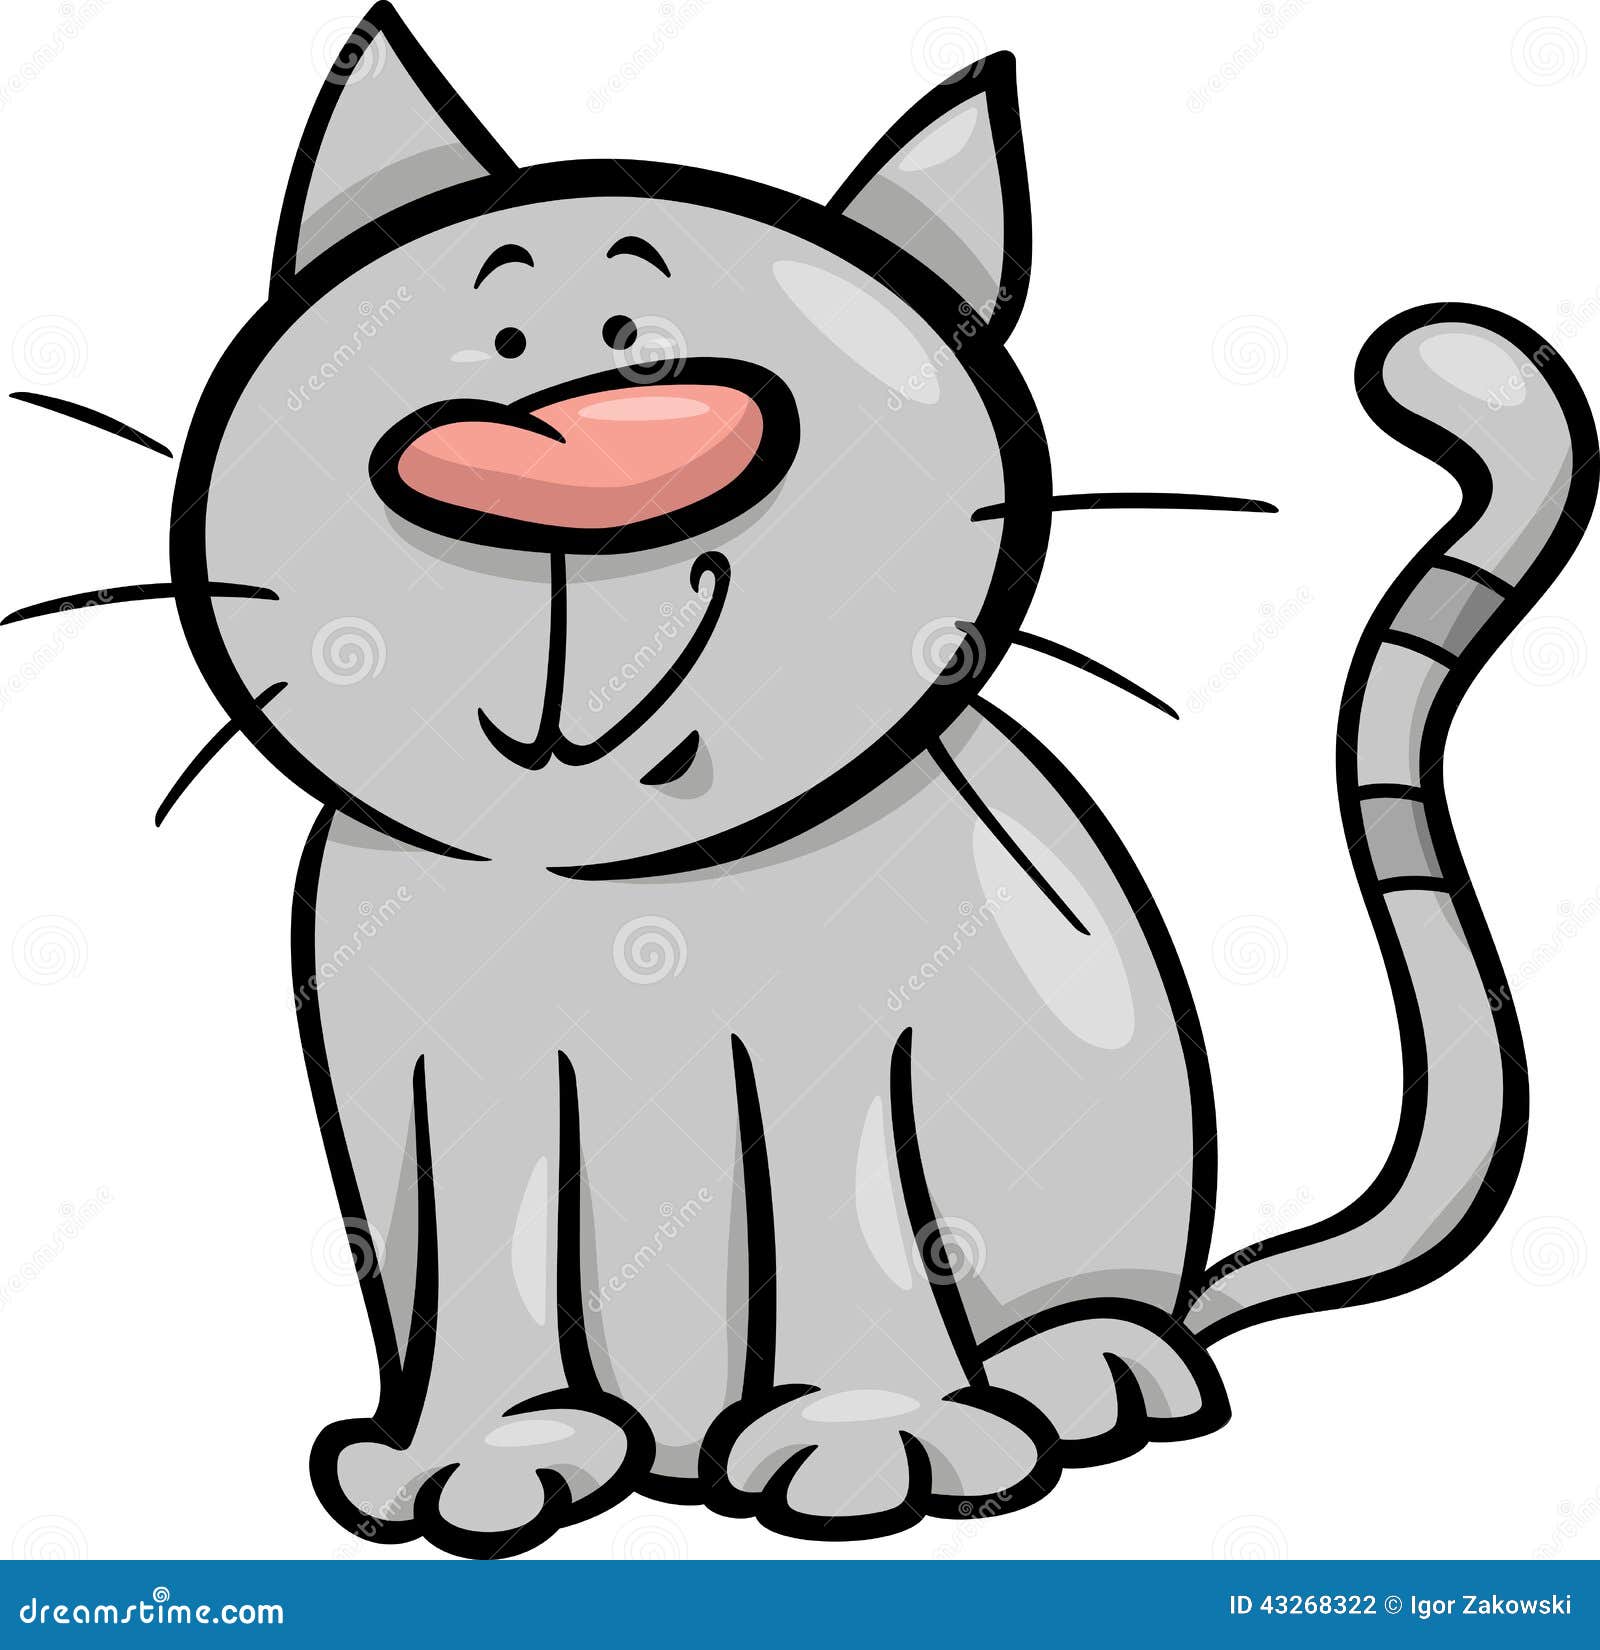 Funny Cat Cartoon Illustration Stock Vector - Illustration of funny